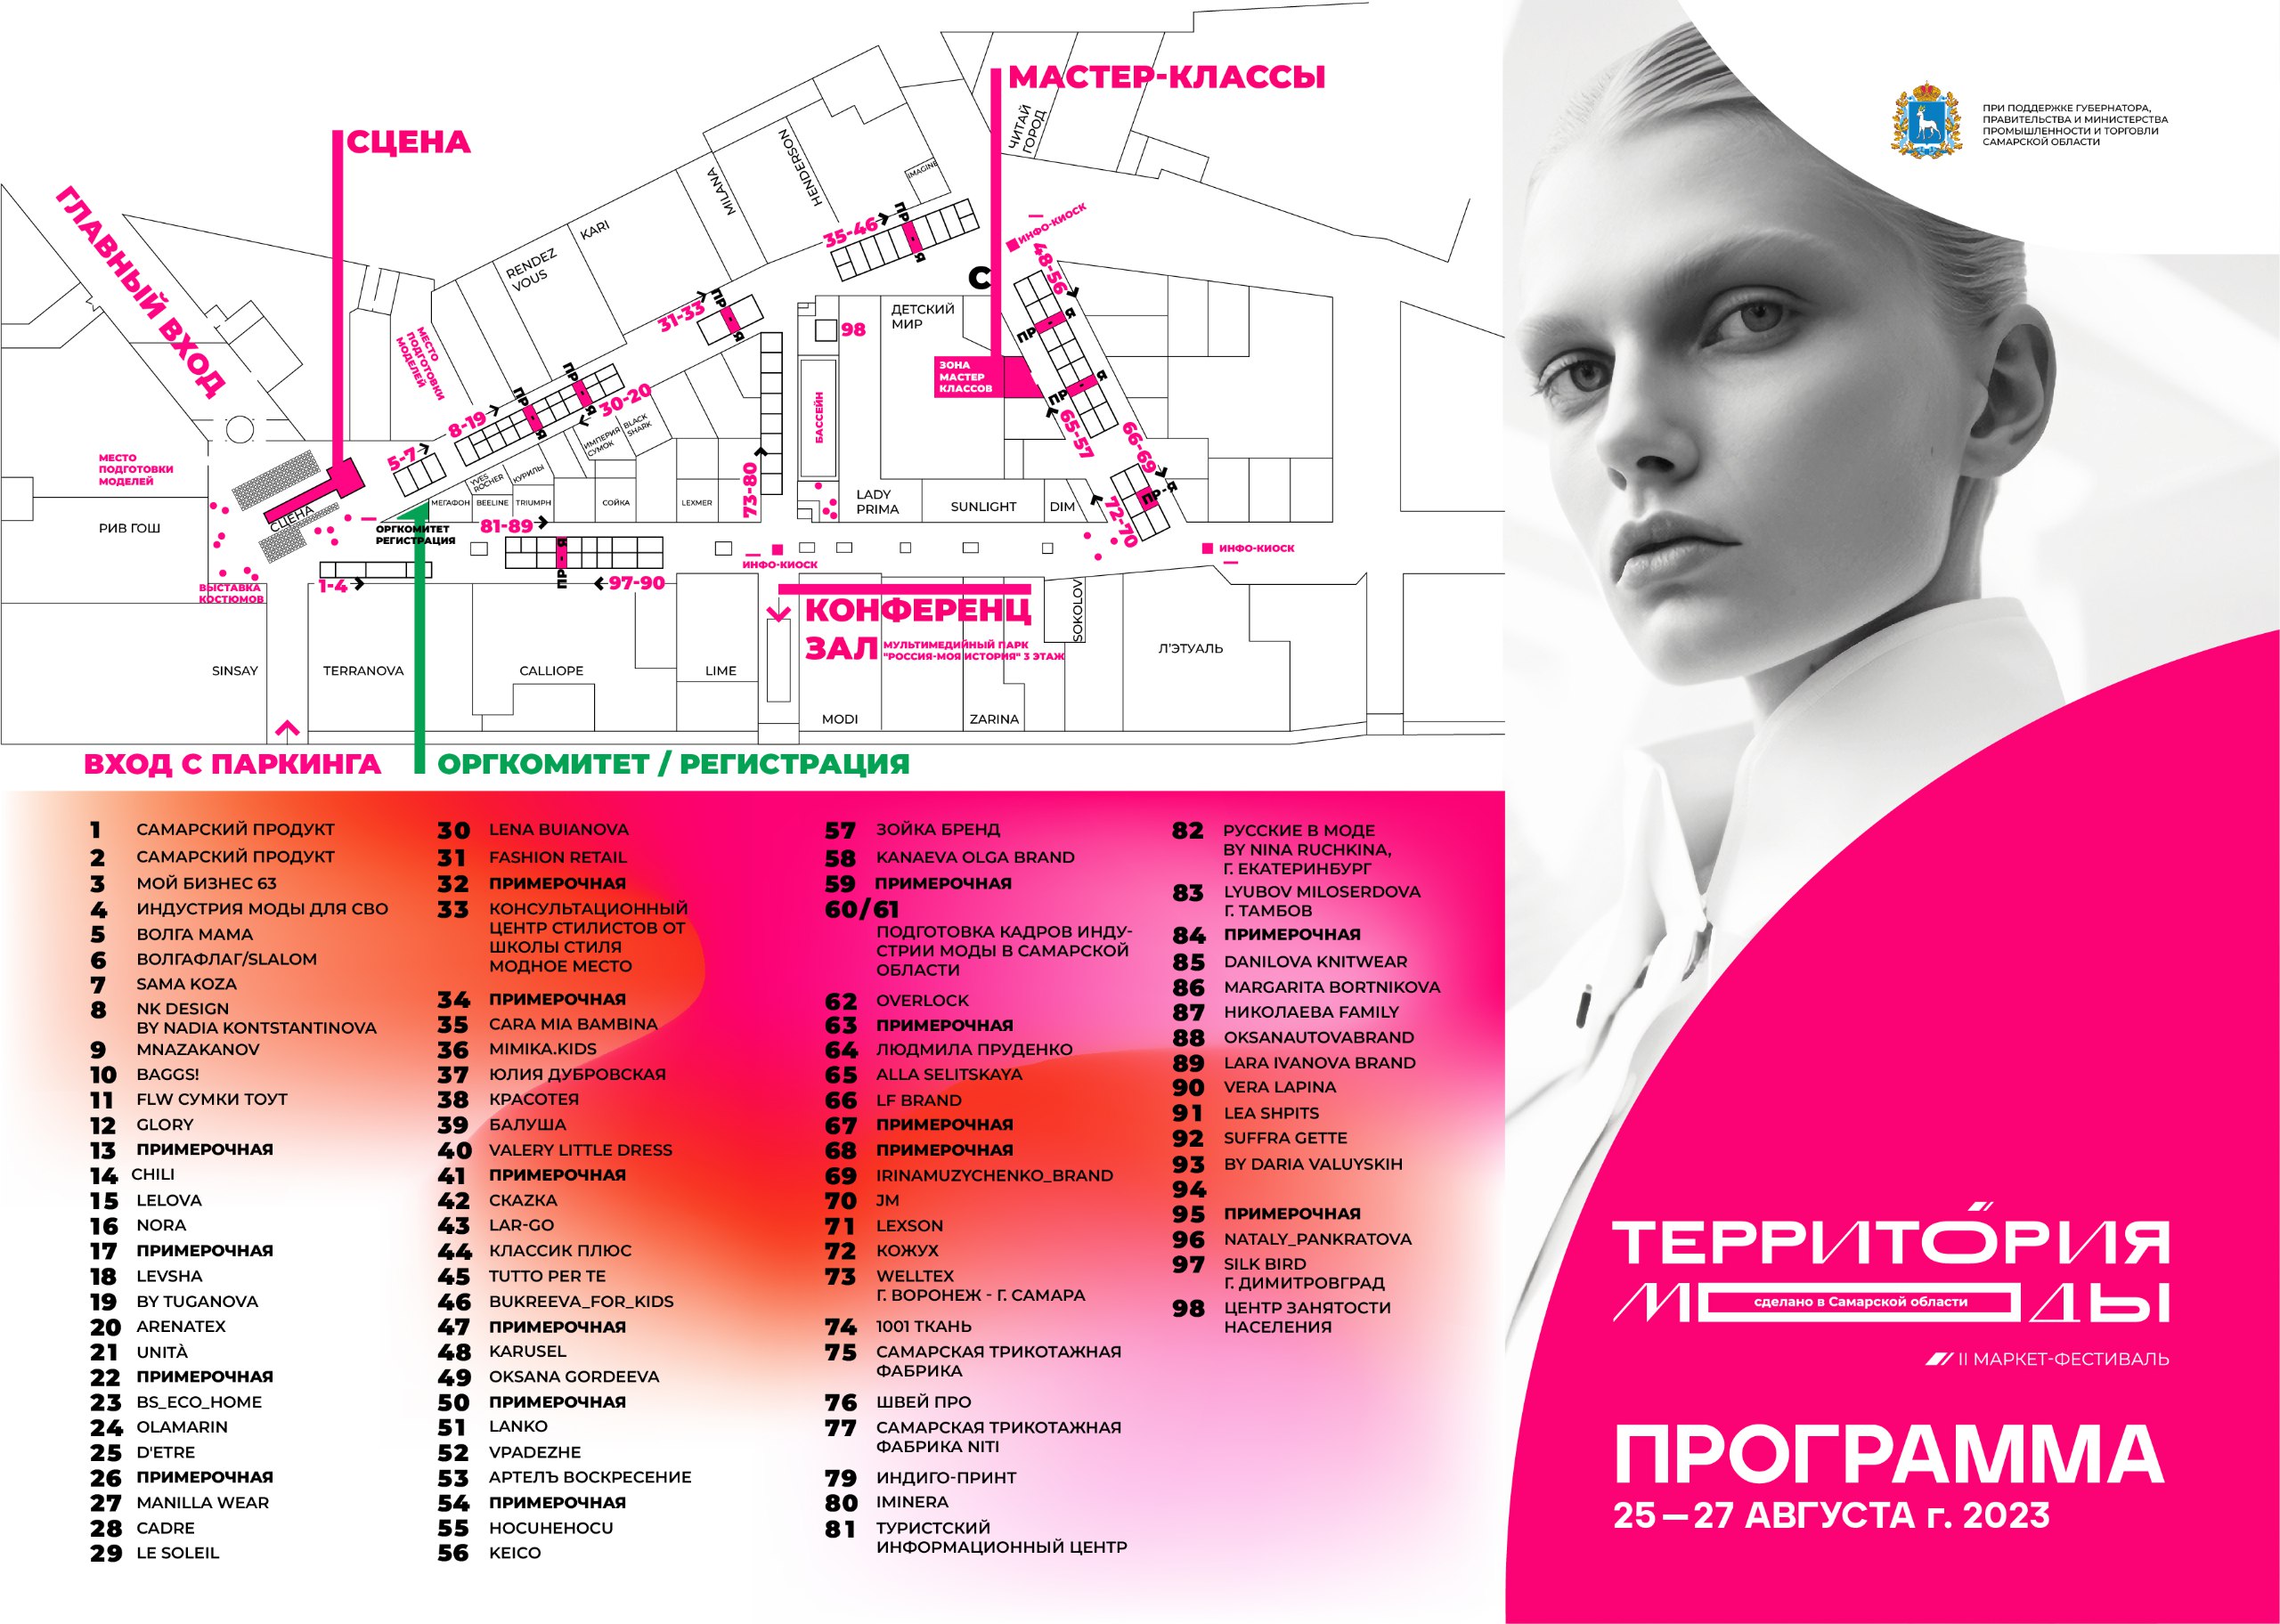 В городе пройдет маркет-фестиваль "Территория моды. Сделано в Самарской области"